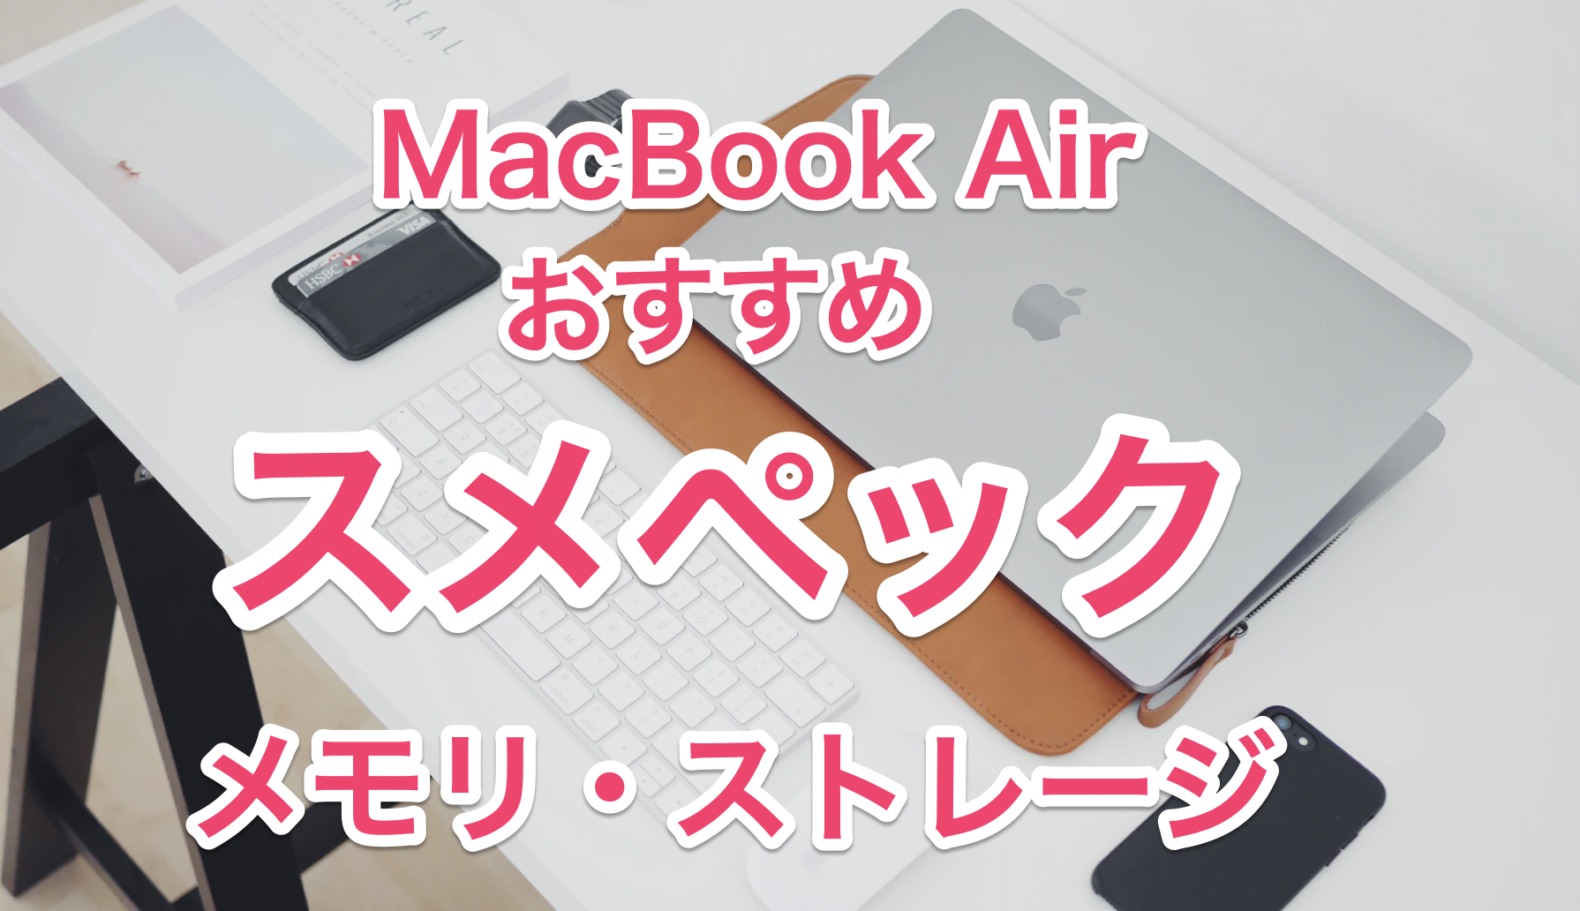 2023/M1】MacBook Airおすすめのメモリとストレージまとめ【結論：8GB 